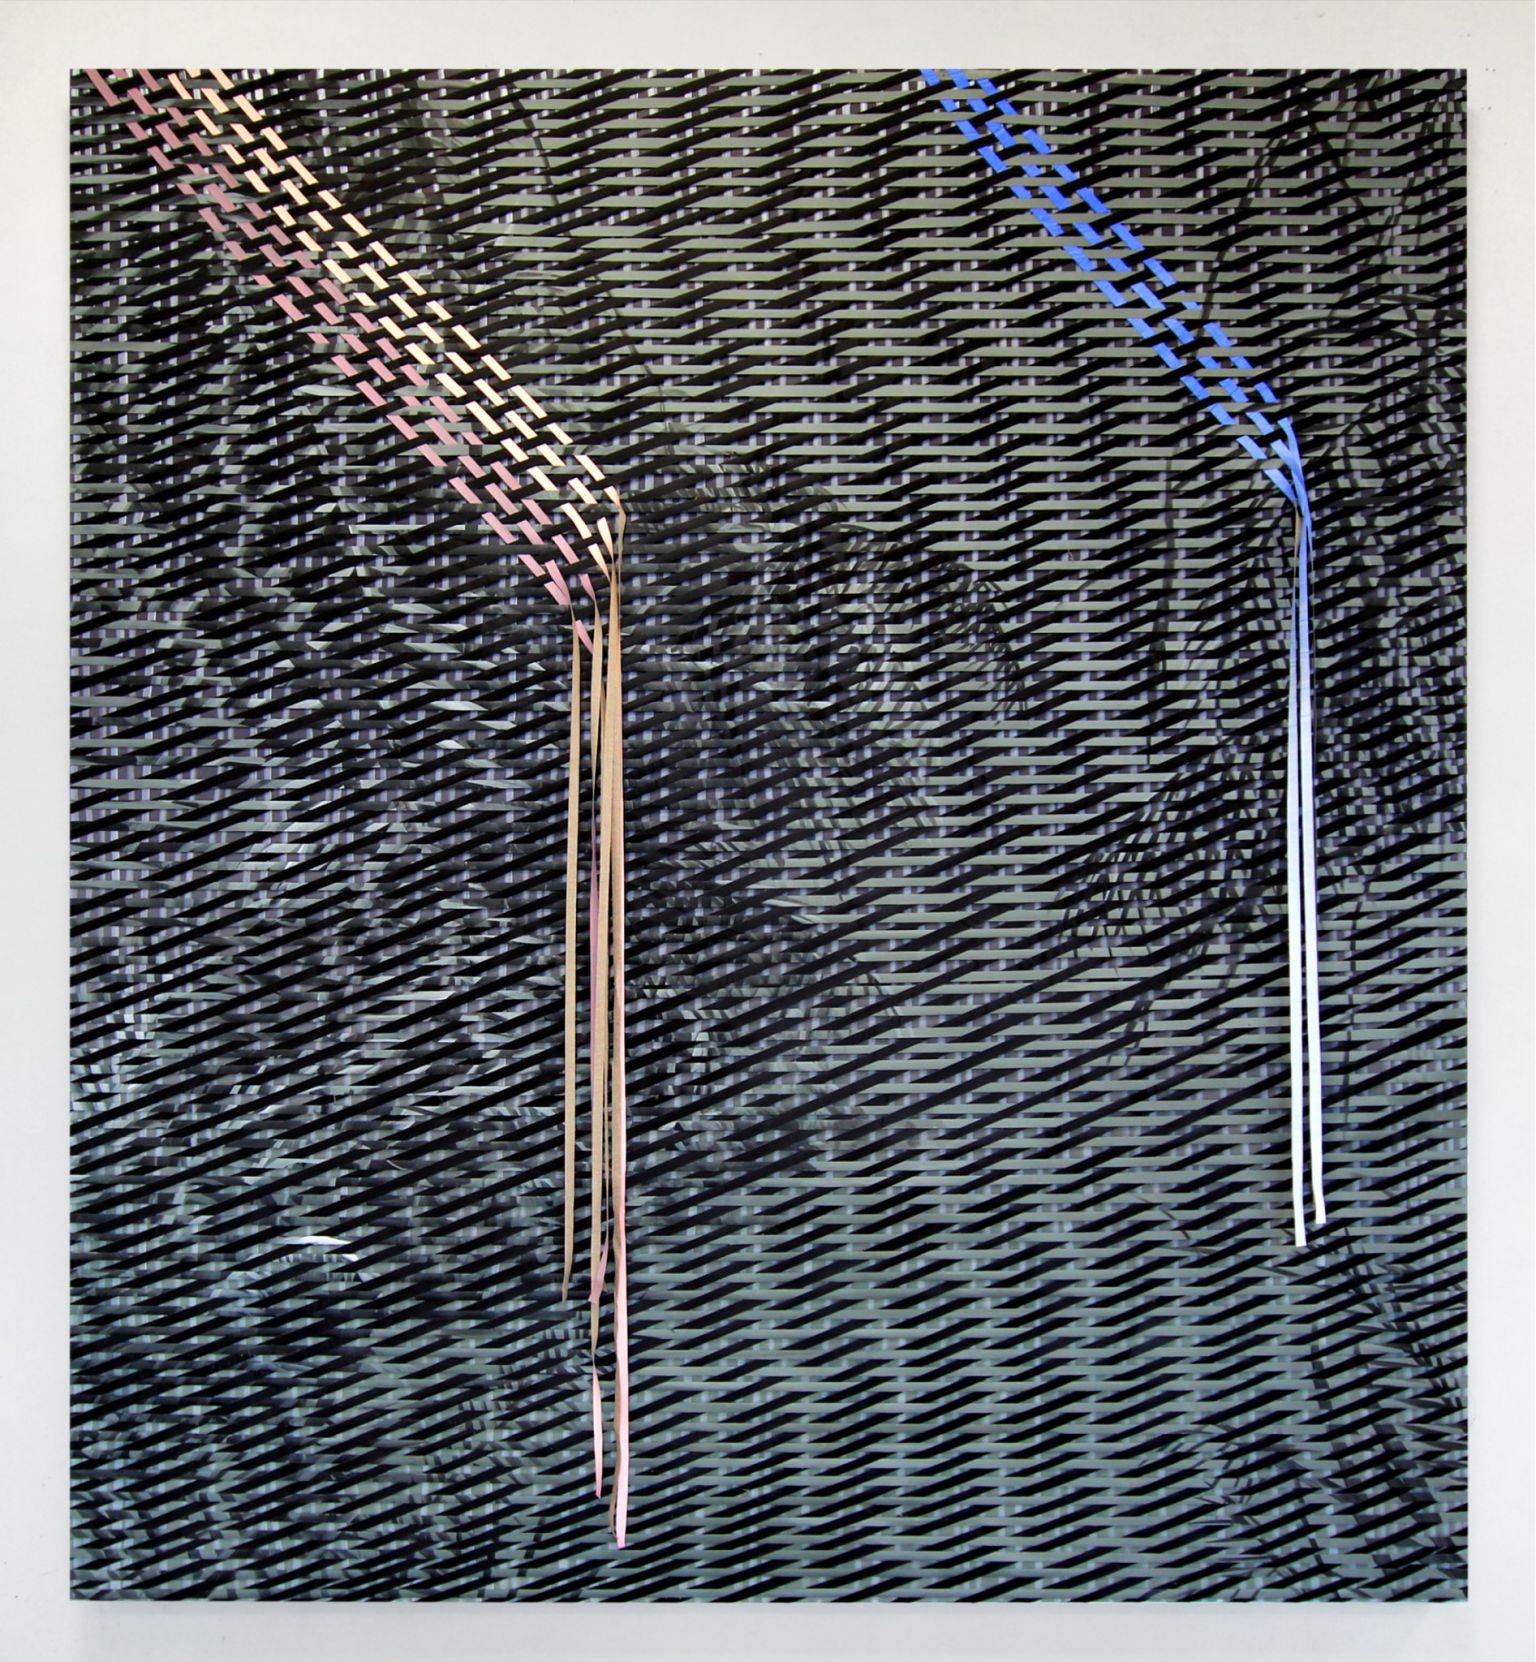 Black Carpet Weave Oil On Several Canvases Weaved Together 2017 220 X 200 Cm